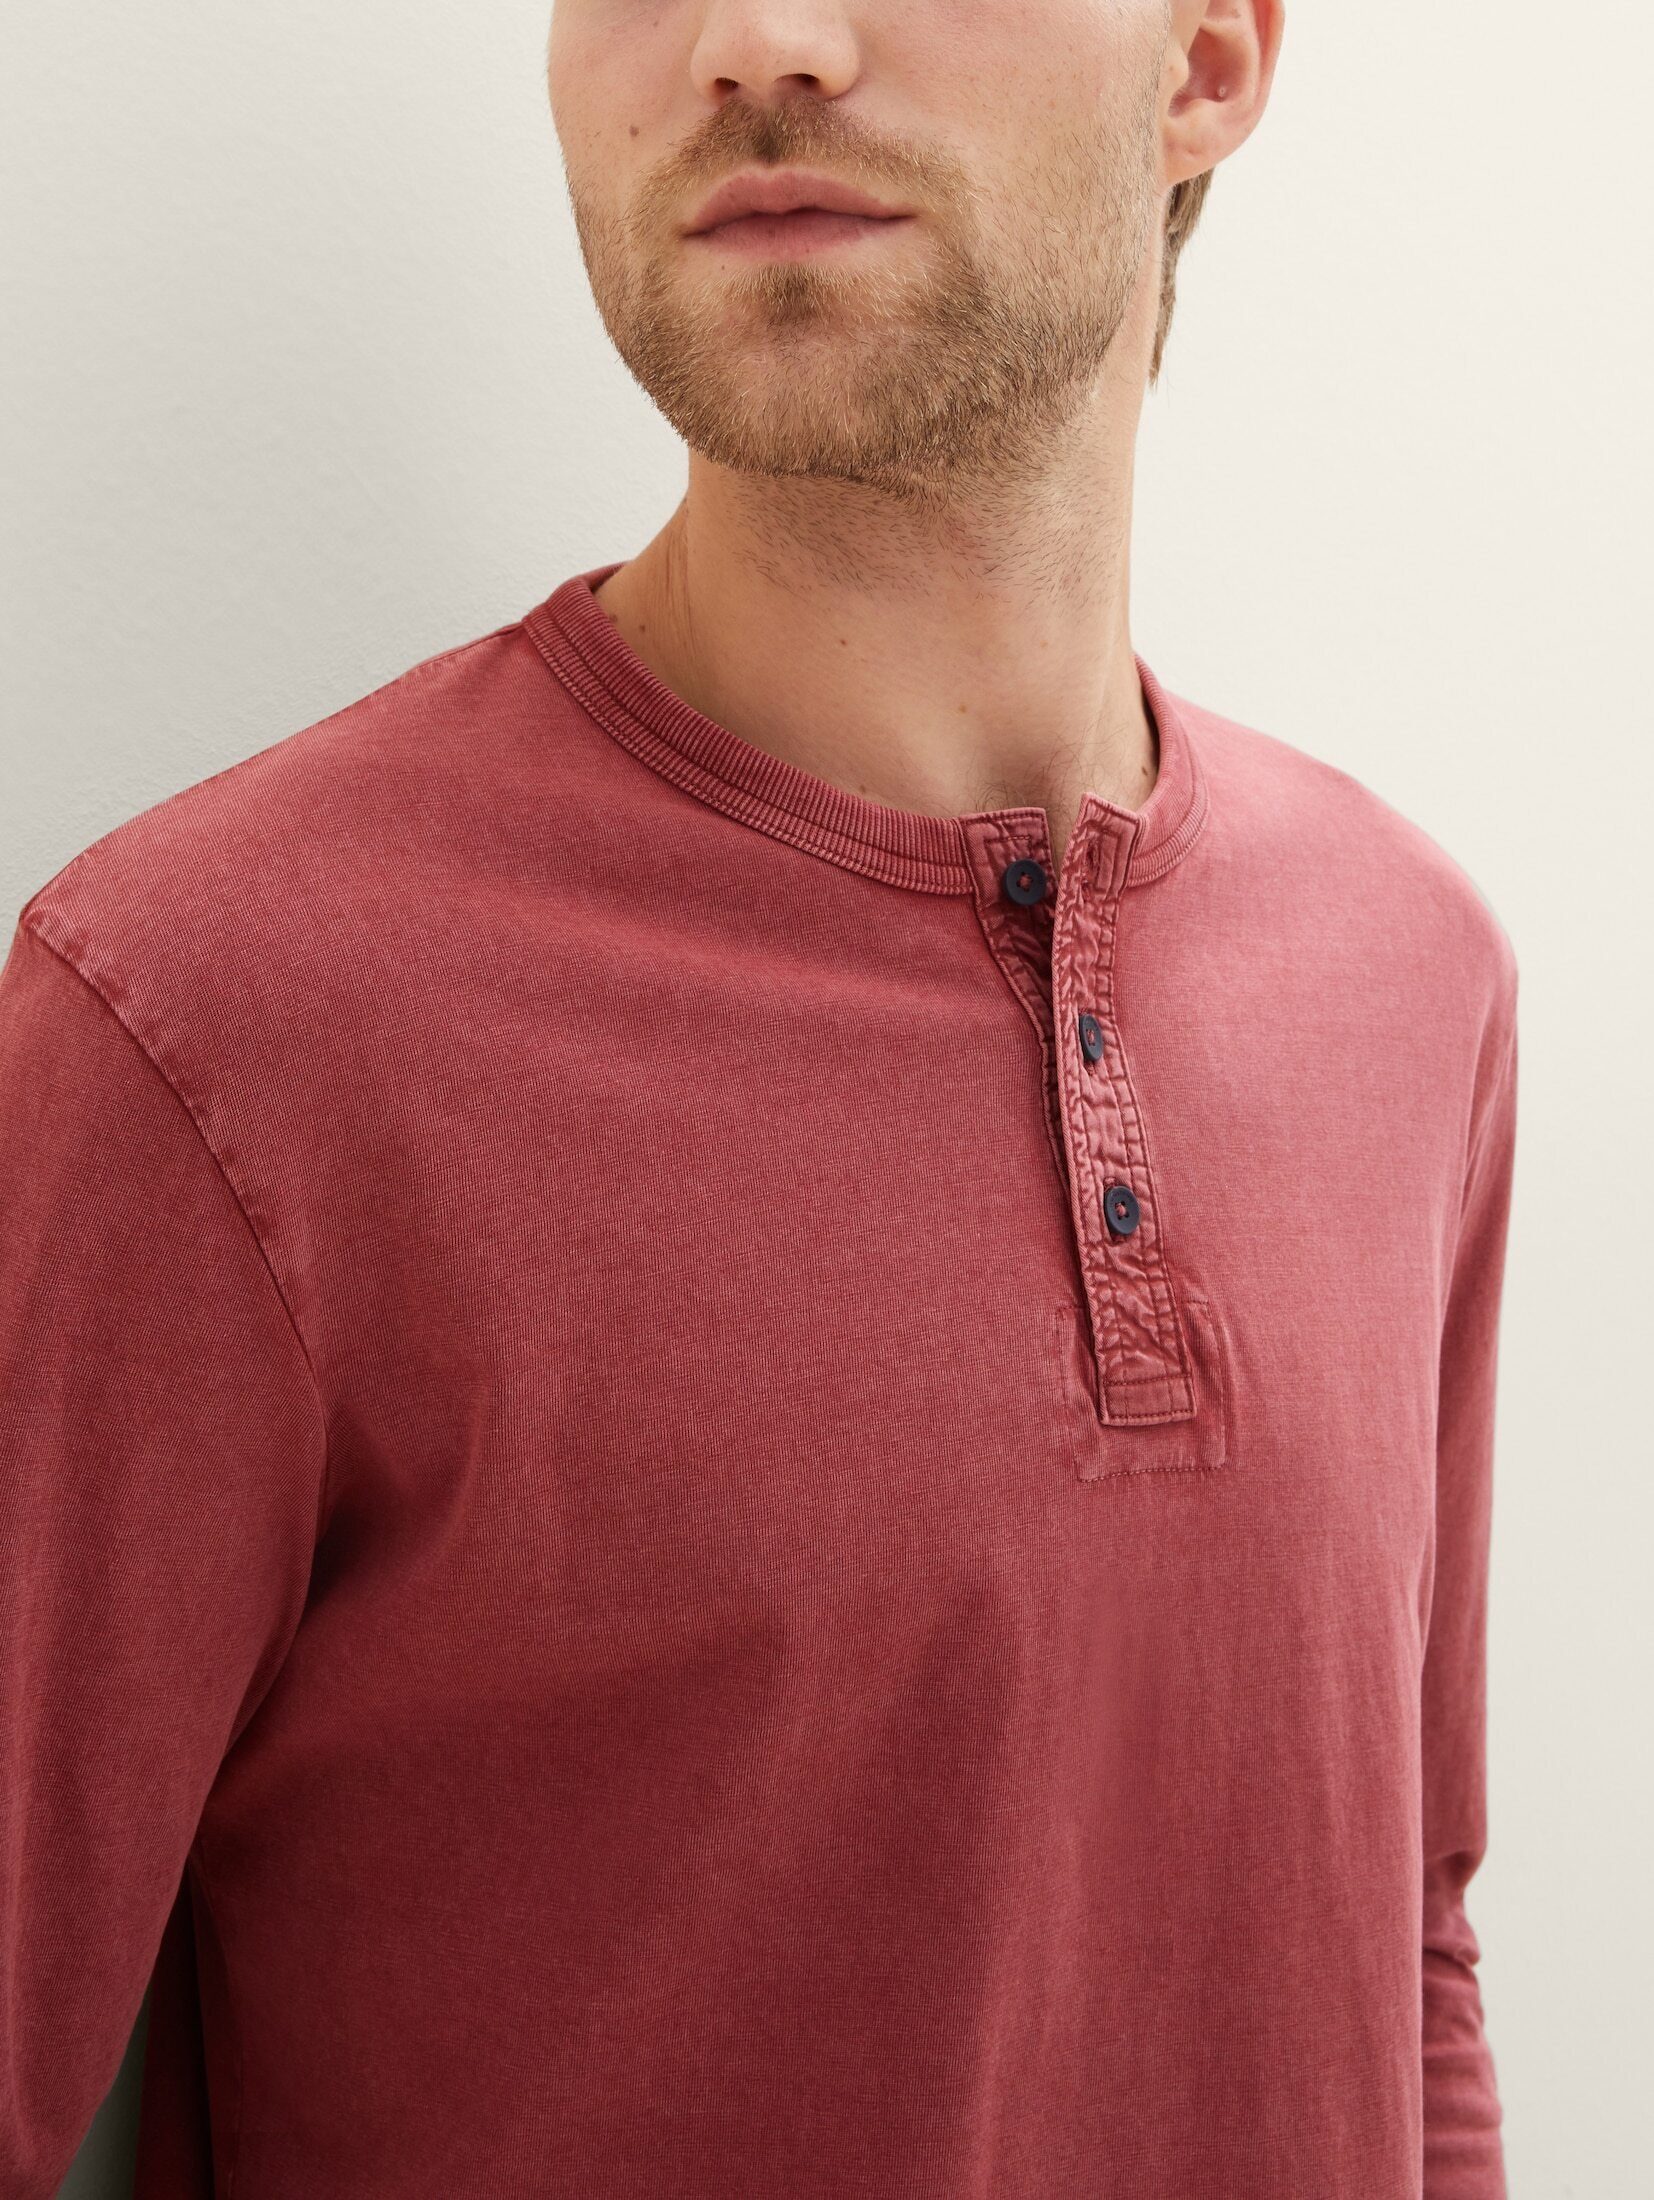 TOM burned mit bordeaux TAILOR T-Shirt Baumwolle nachhaltigerer red Henleyshirt